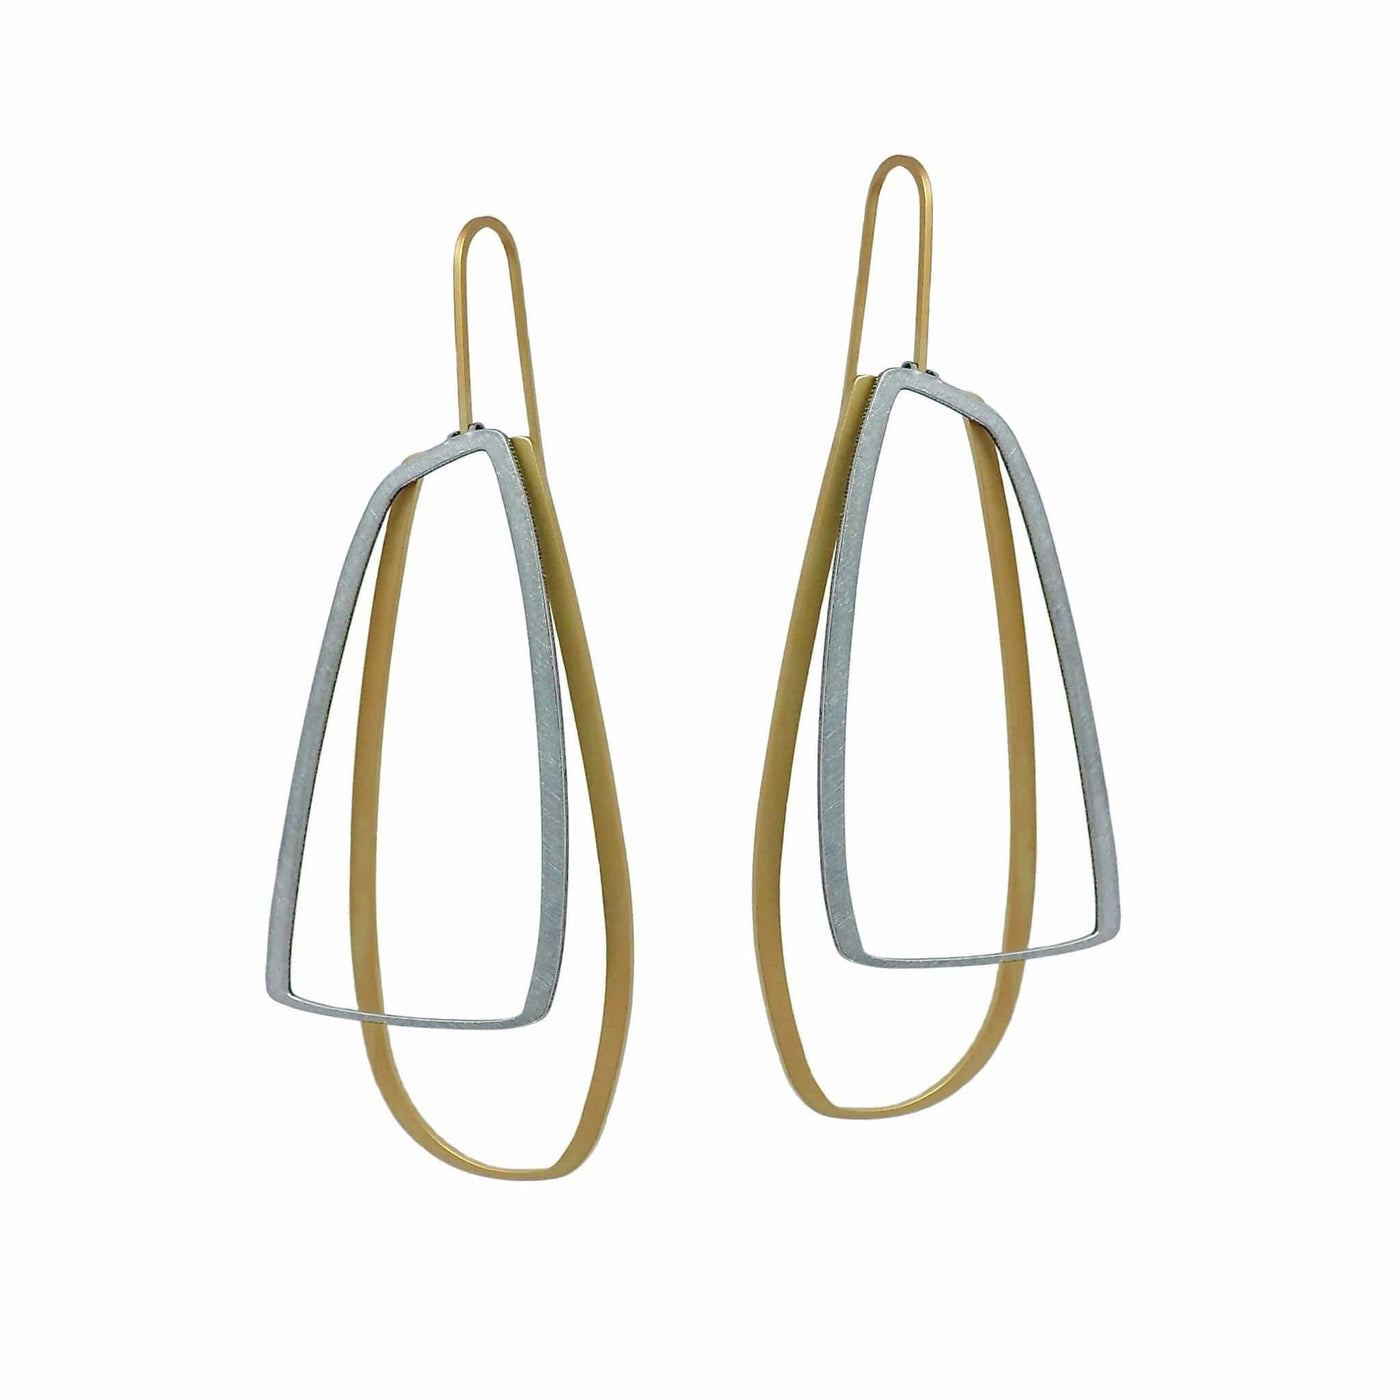 X2 Large Outline Earrings - Gold/ Black - inSync design